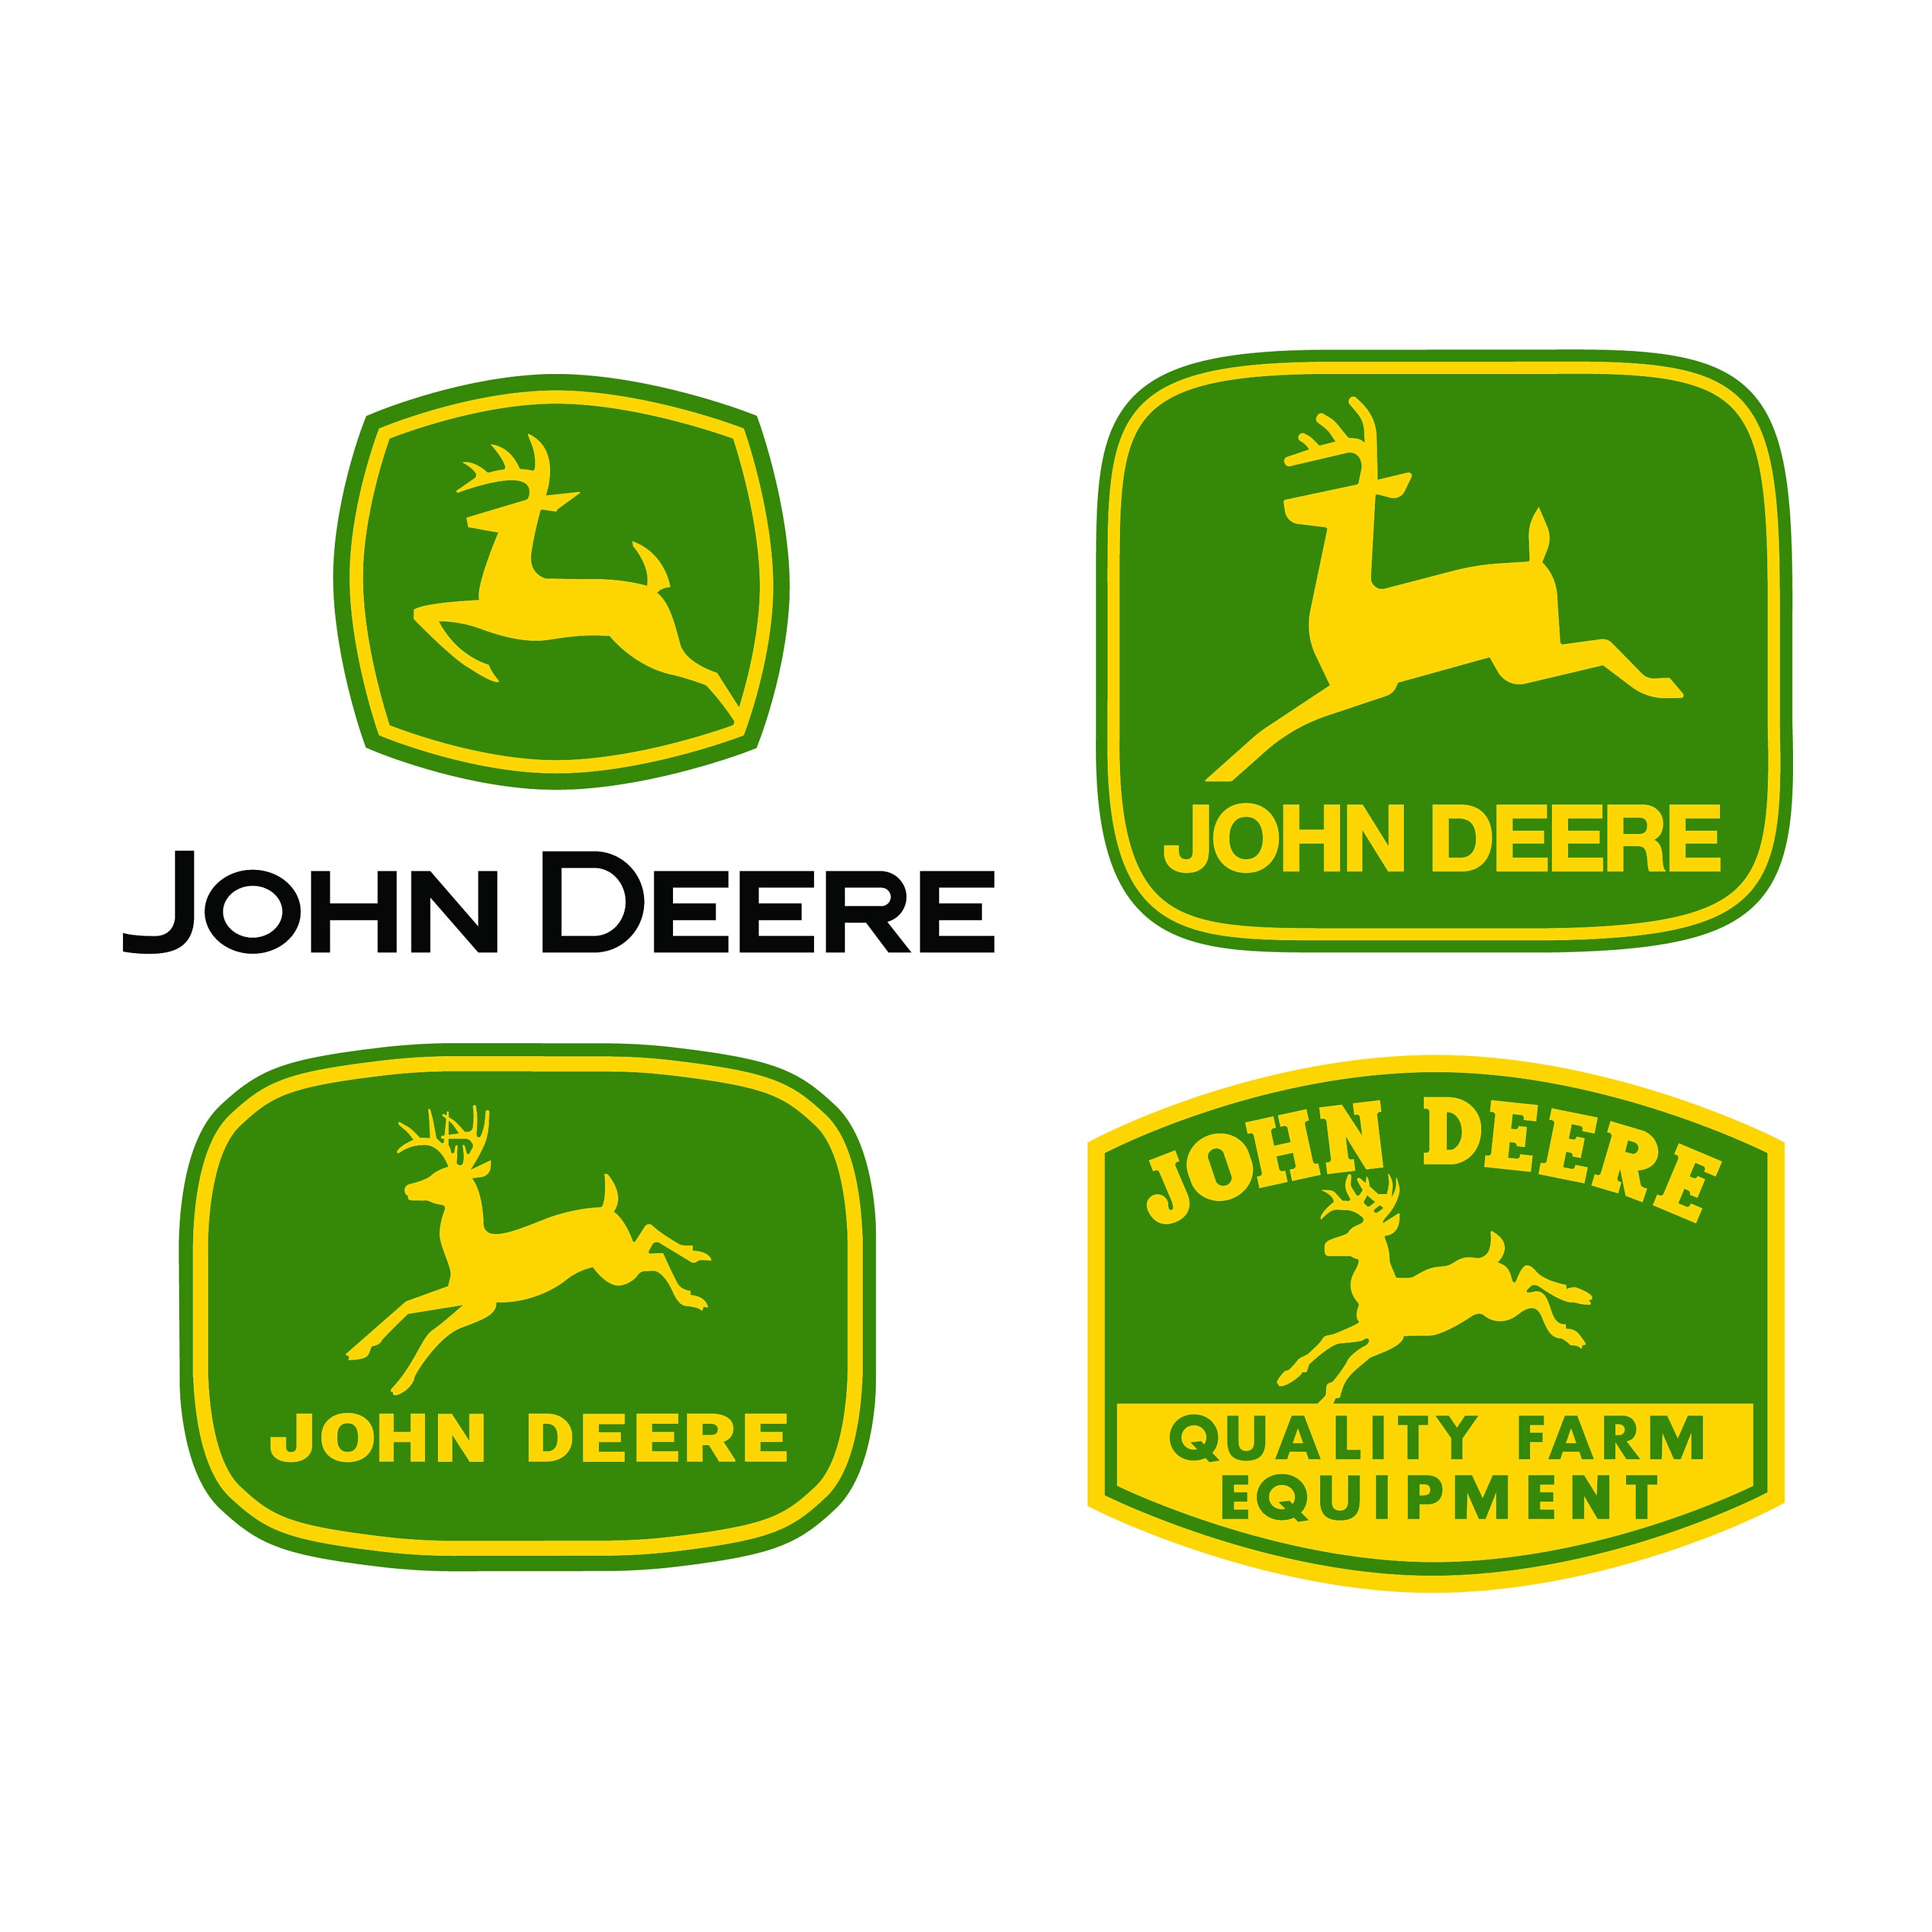 John Deere 6920 S tractor decal aufkleber adesivo sticker set